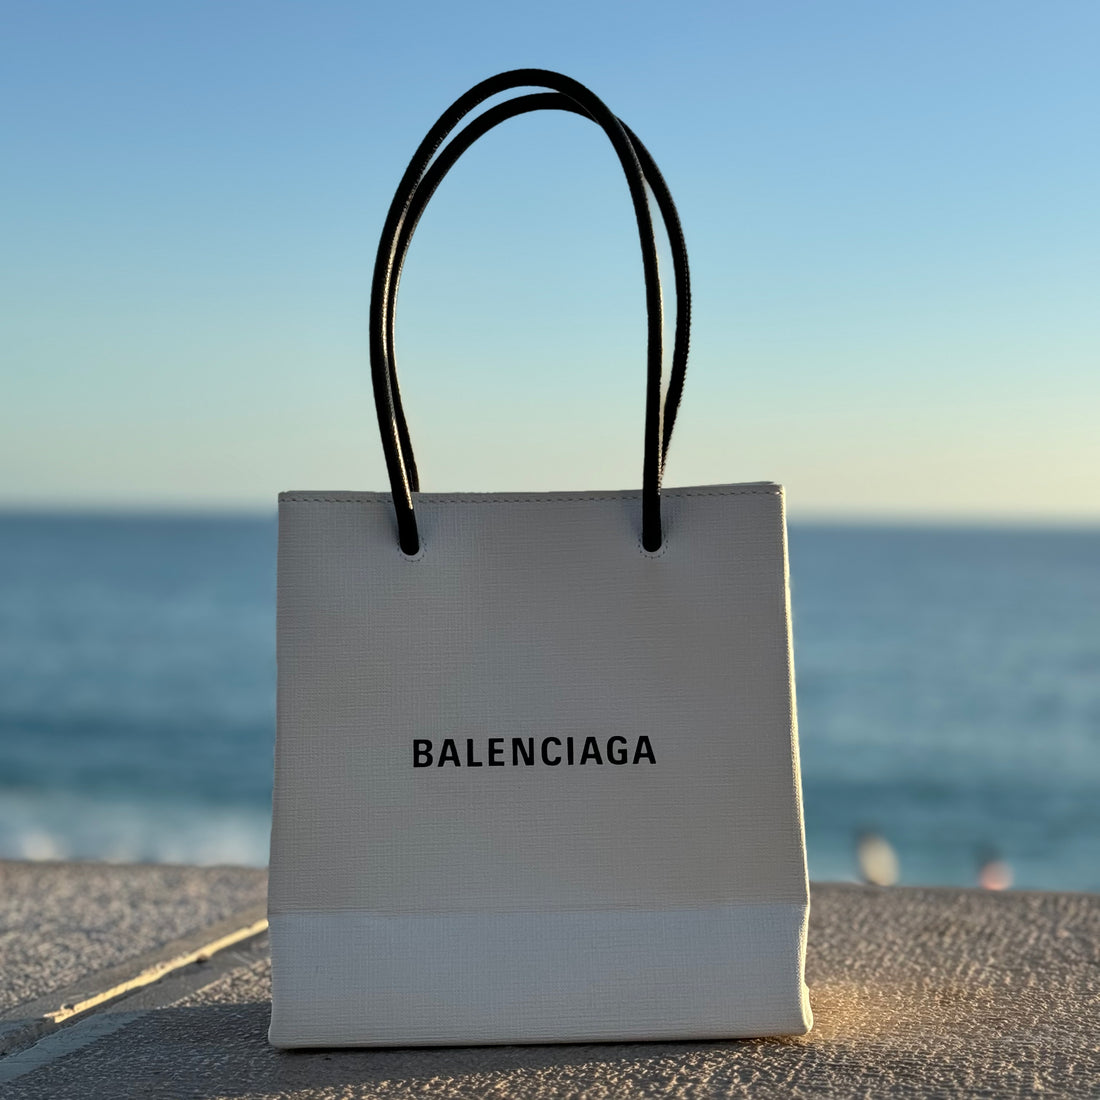 Balenciaga - Sac Cabas Shopping Nord Sud